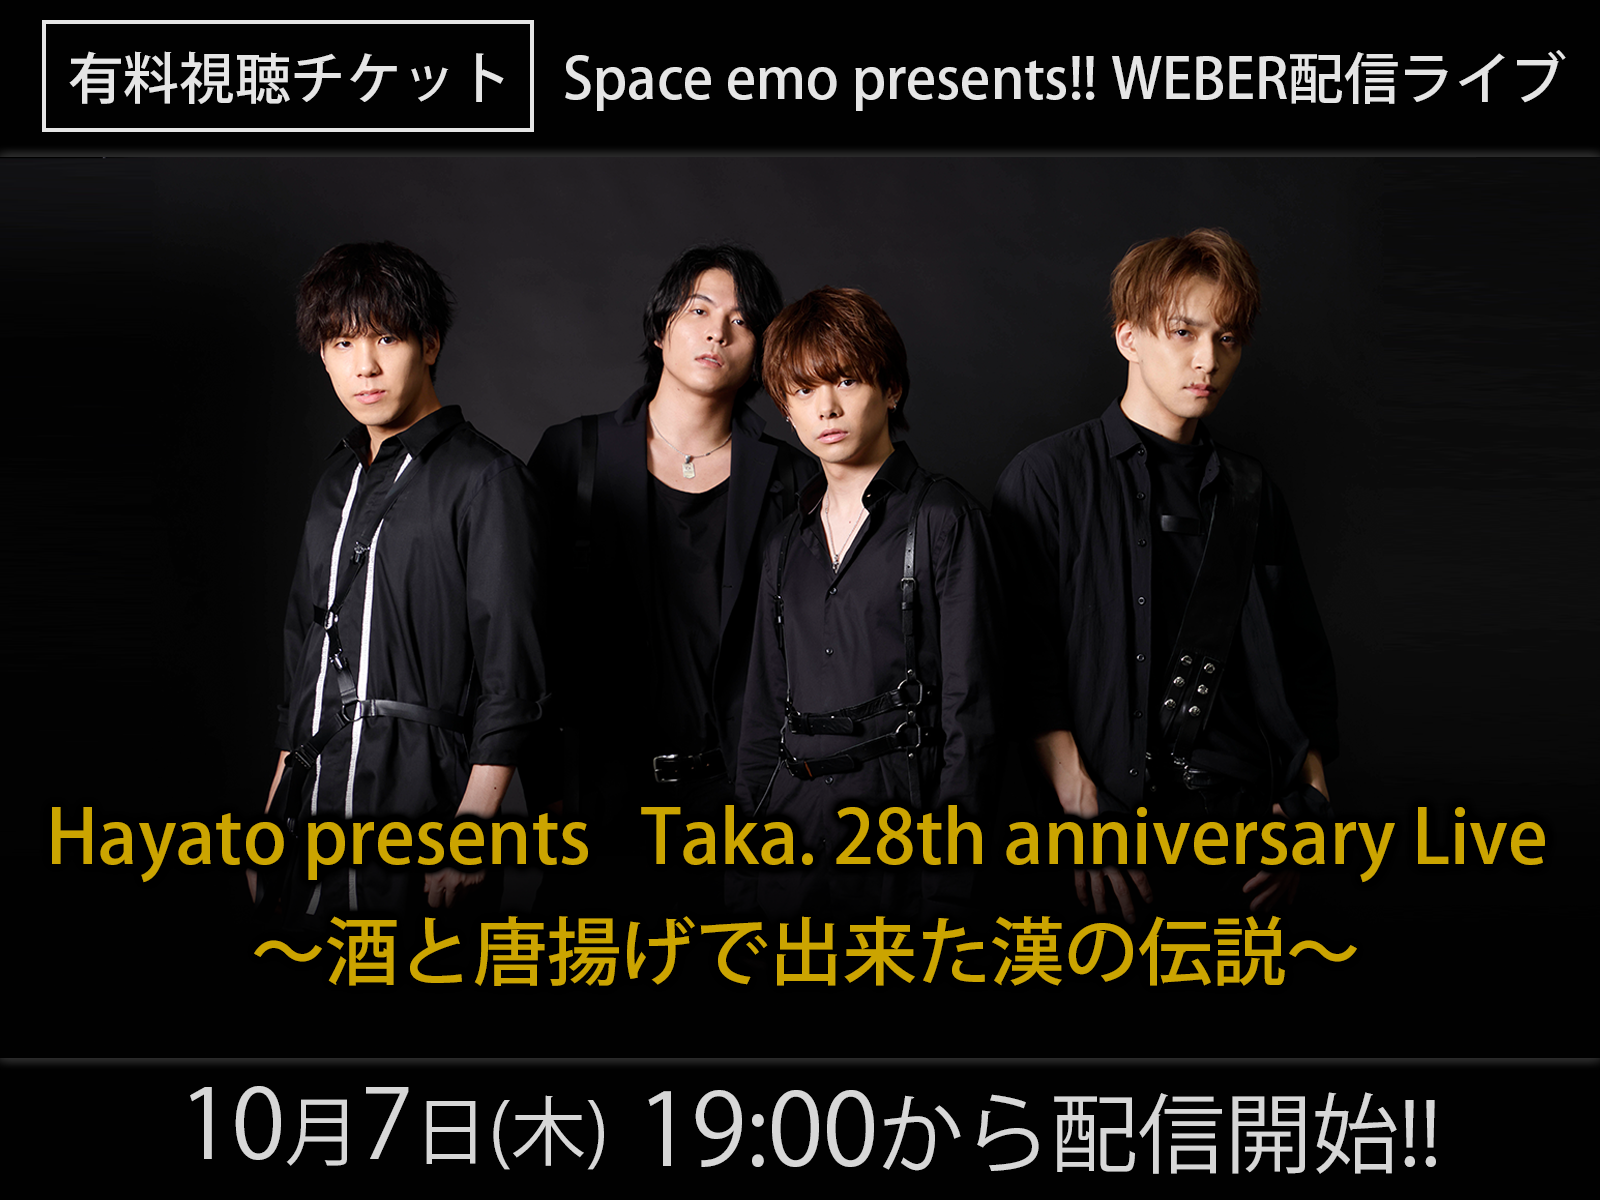 ＜グッズ付き有料視聴チケット＞10/7（木）Space emo presents!! WEBER配信ライブ
「Hayato presents　Taka. 28th anniversary Live 　〜酒と唐揚げで出来た漢の伝説〜」